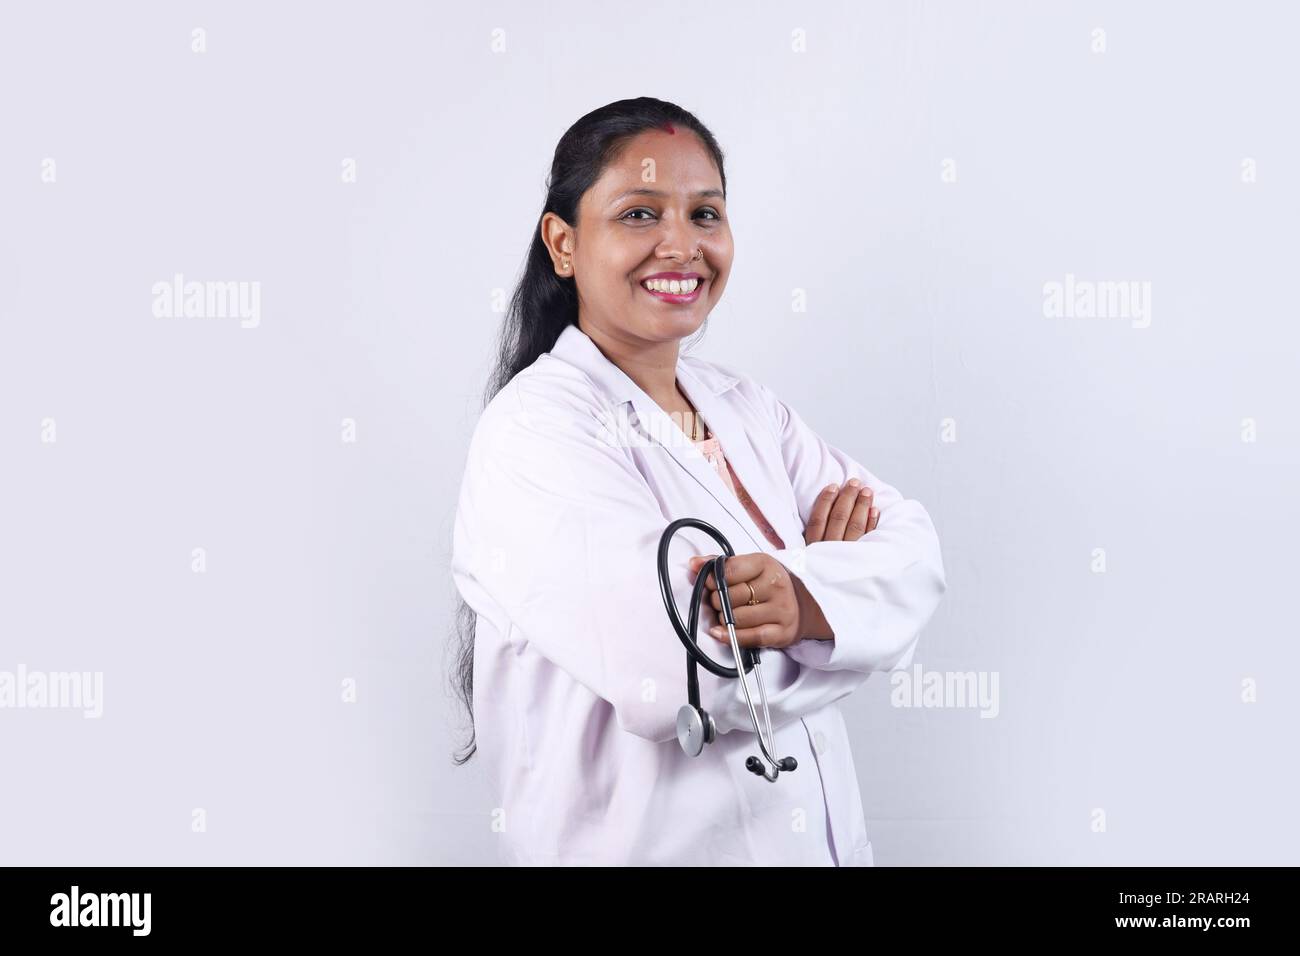 Ritratto di un felice medico indiano in uniforme con stetoscopio e specifiche. Stetoscopio. Dottore in baffi. Medico e sanitario. Foto Stock